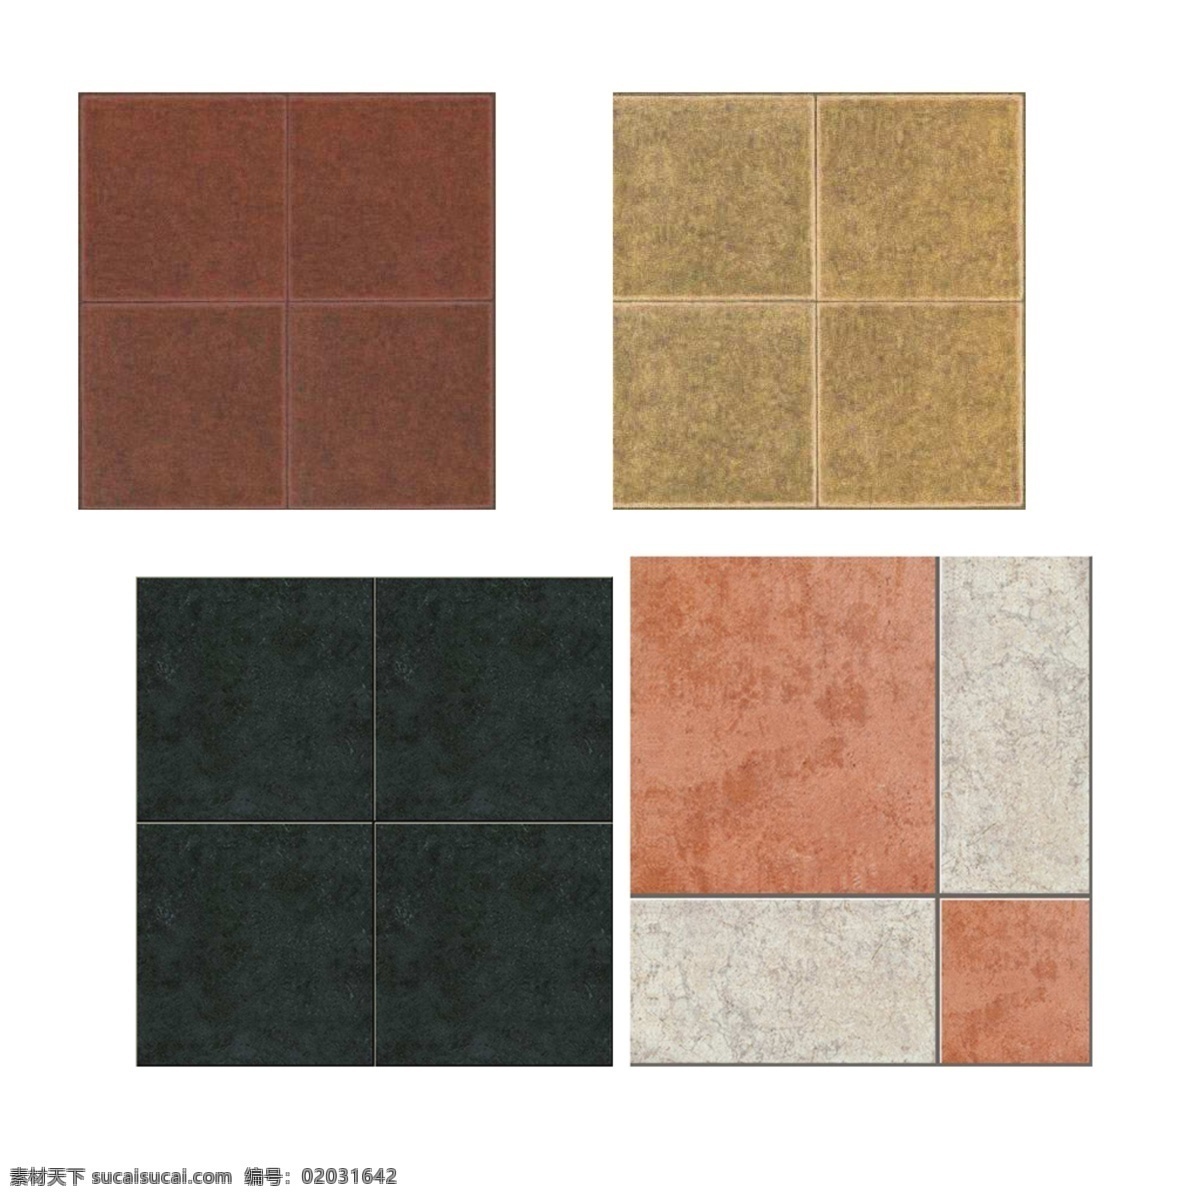 地板贴图10 瓷砖 大理石 底纹边框 地板贴图 地板效果图 地板材质 地板设计素材 地板素材 建材 建筑 室内地板 装饰平面图材 白色